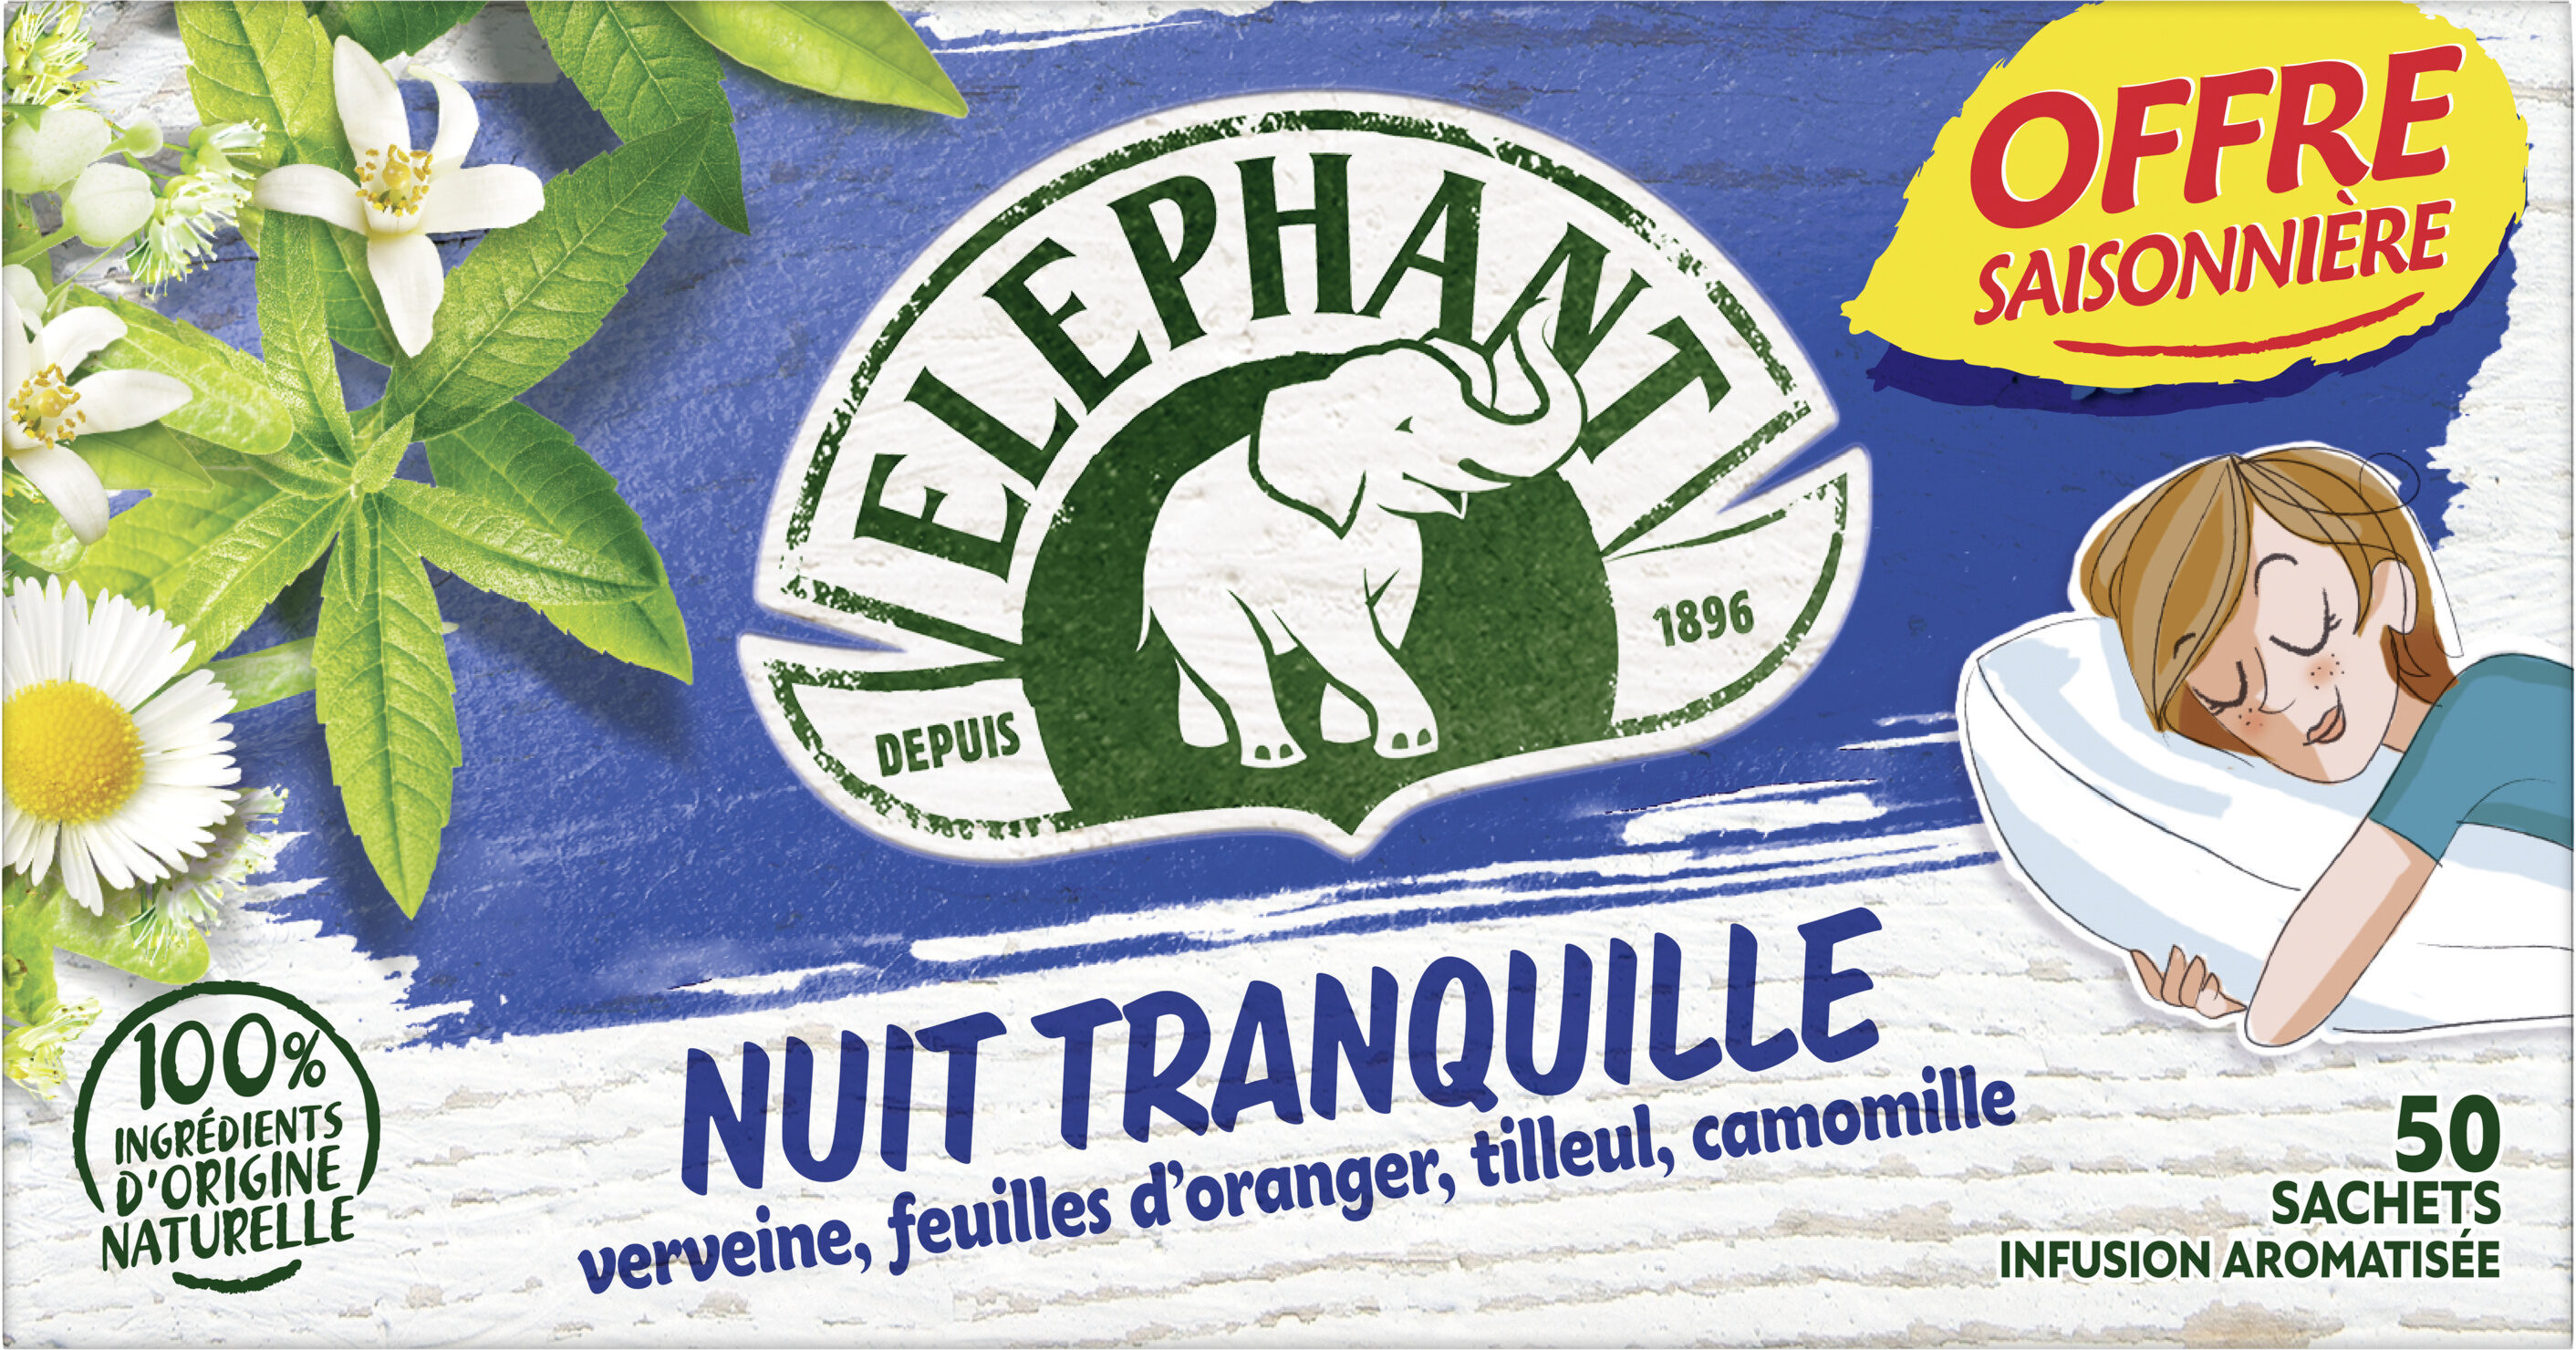 Elephant Tisane Nuit Tranquille Offre Saisonnière 50 Sachets - Produit